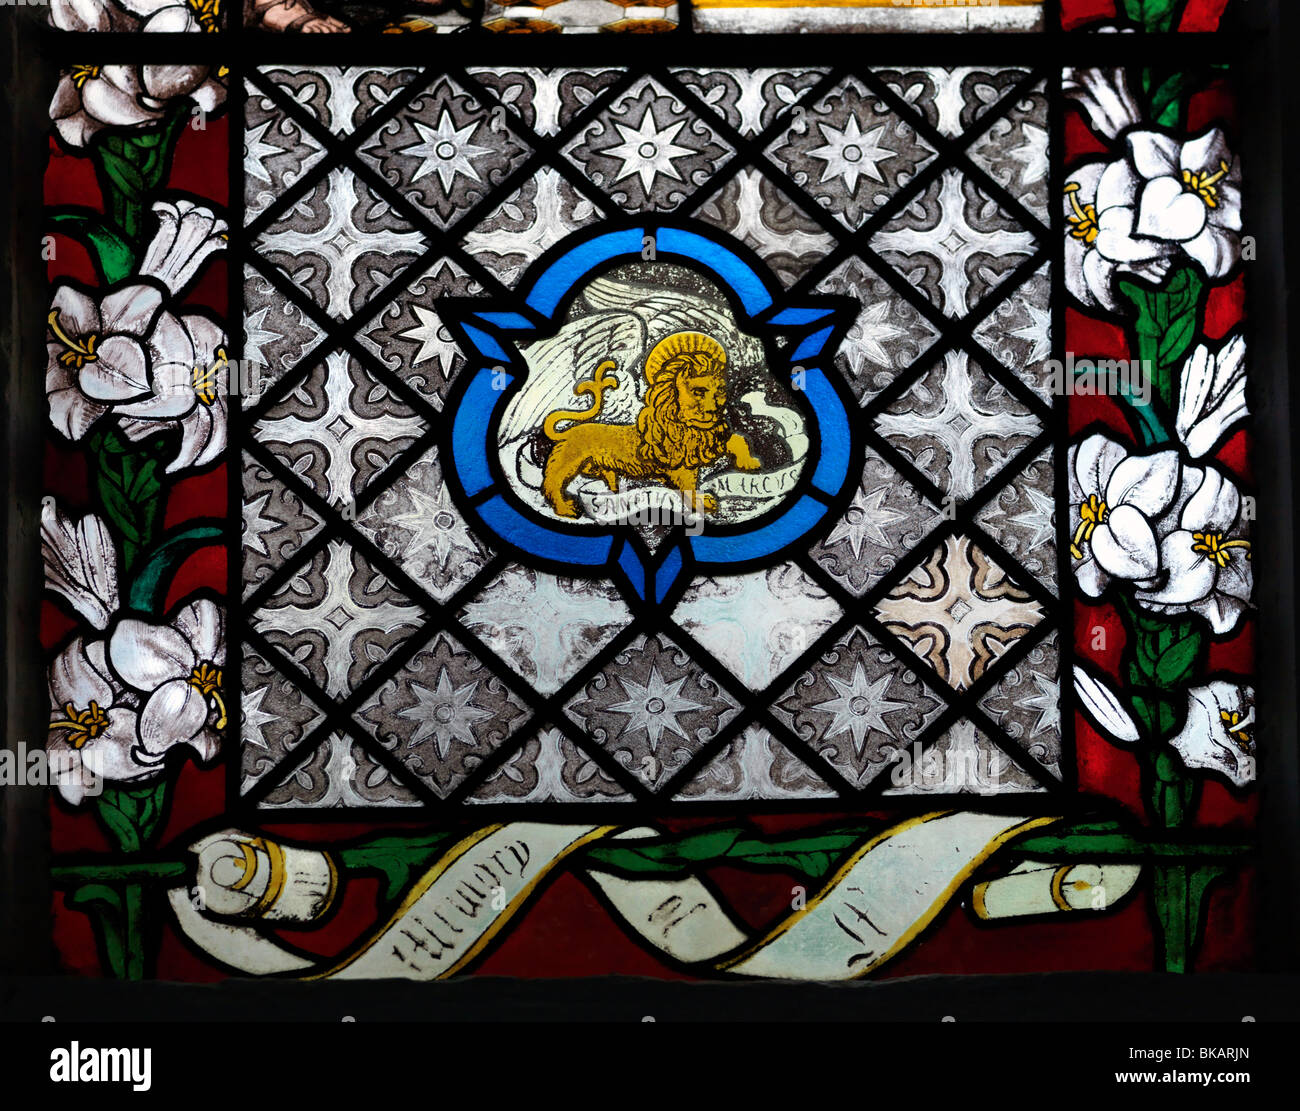 Chiesa Parrocchiale di San Pietro Walton sulla collina Surrey in Inghilterra vetrata di San Marco Evangelista simboleggiata come un leone Foto Stock